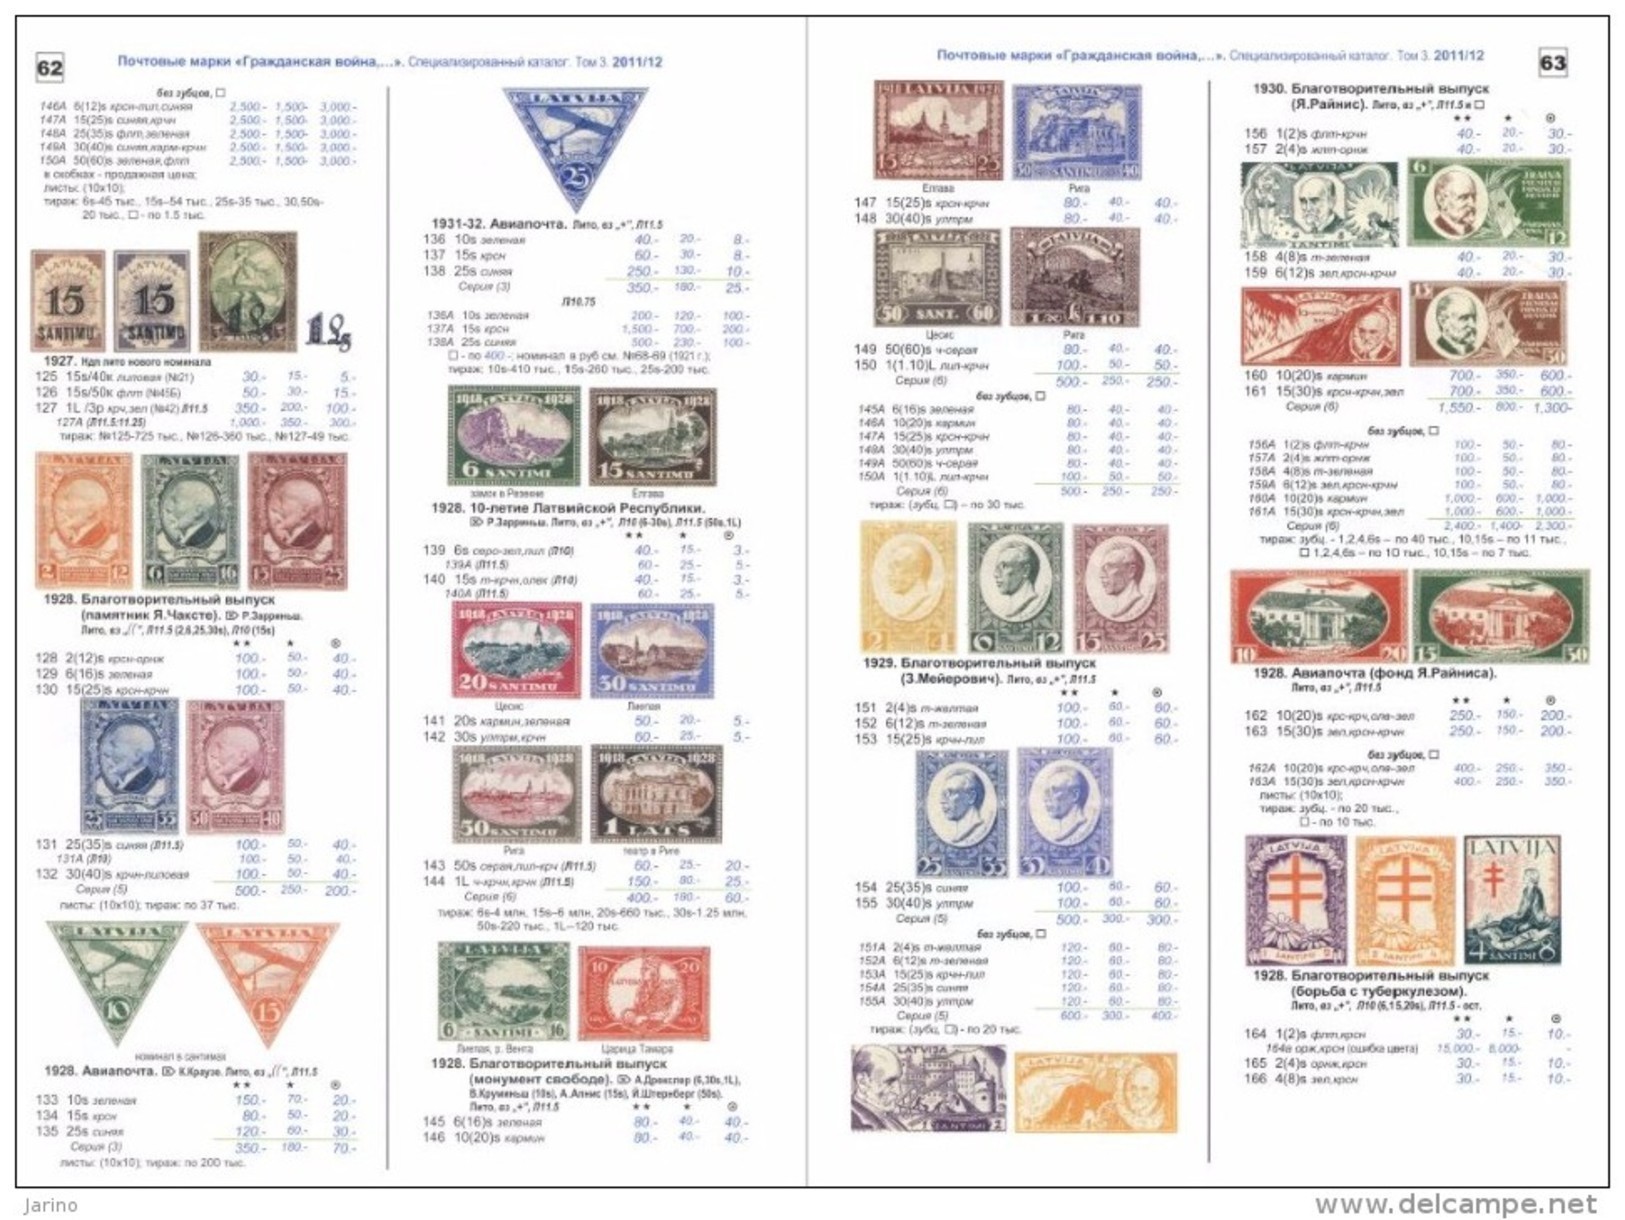 Russland & UdSSR special kataloge "Civil War" 1867-1945 - Der Bürgerkrieg,310 Farbseiten auf DVD-R, Zemstvo-lokal stamps